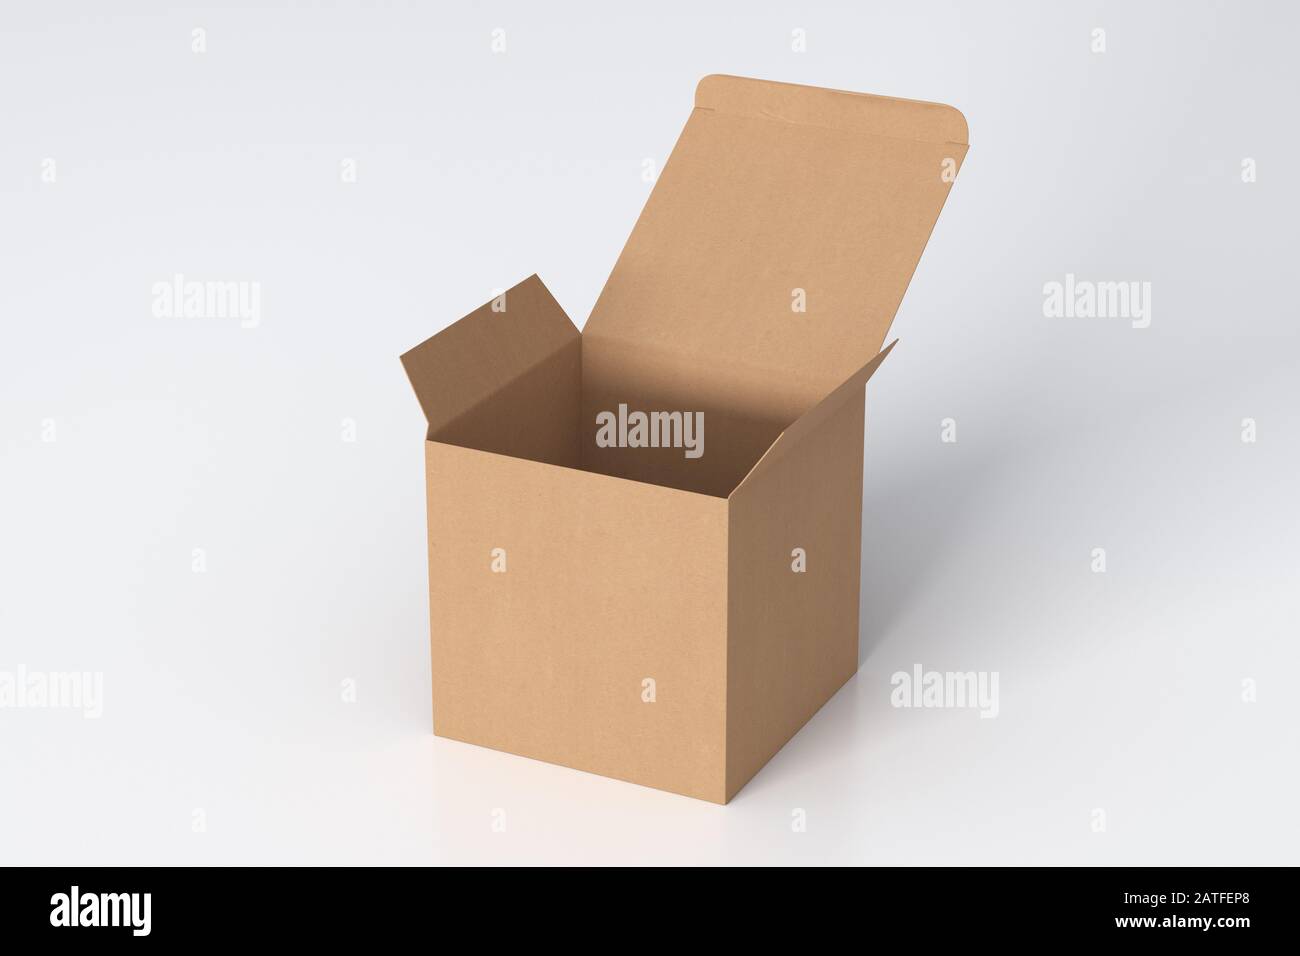 Boîte cadeau cube en carton vierge avec couvercle à rabat ouvert sur fond blanc. Chemin de détourage autour de la maquette de boîte Banque D'Images